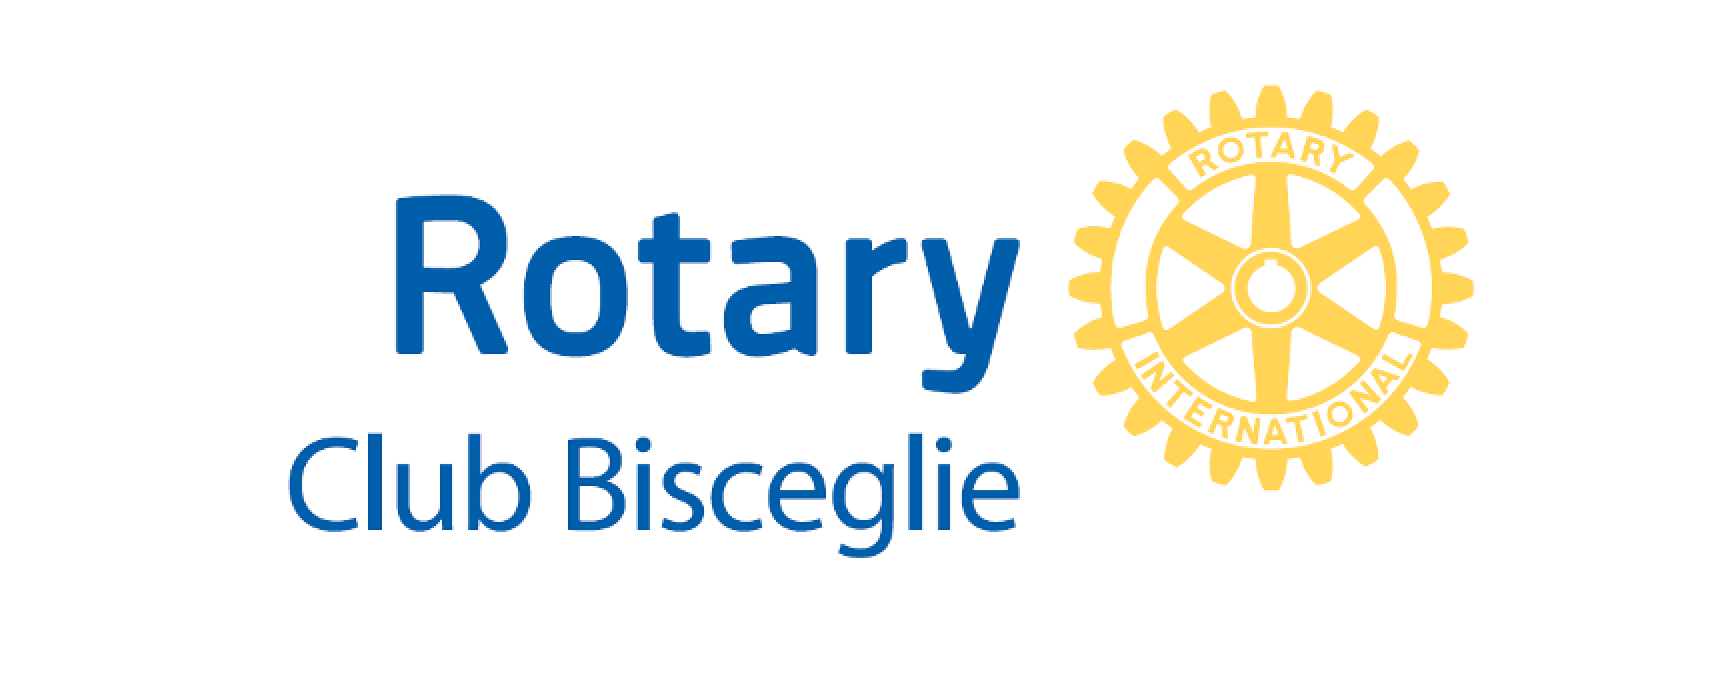 Rotary Club Bisceglie, Premio Professionalità a porte chiuse / DETTAGLI